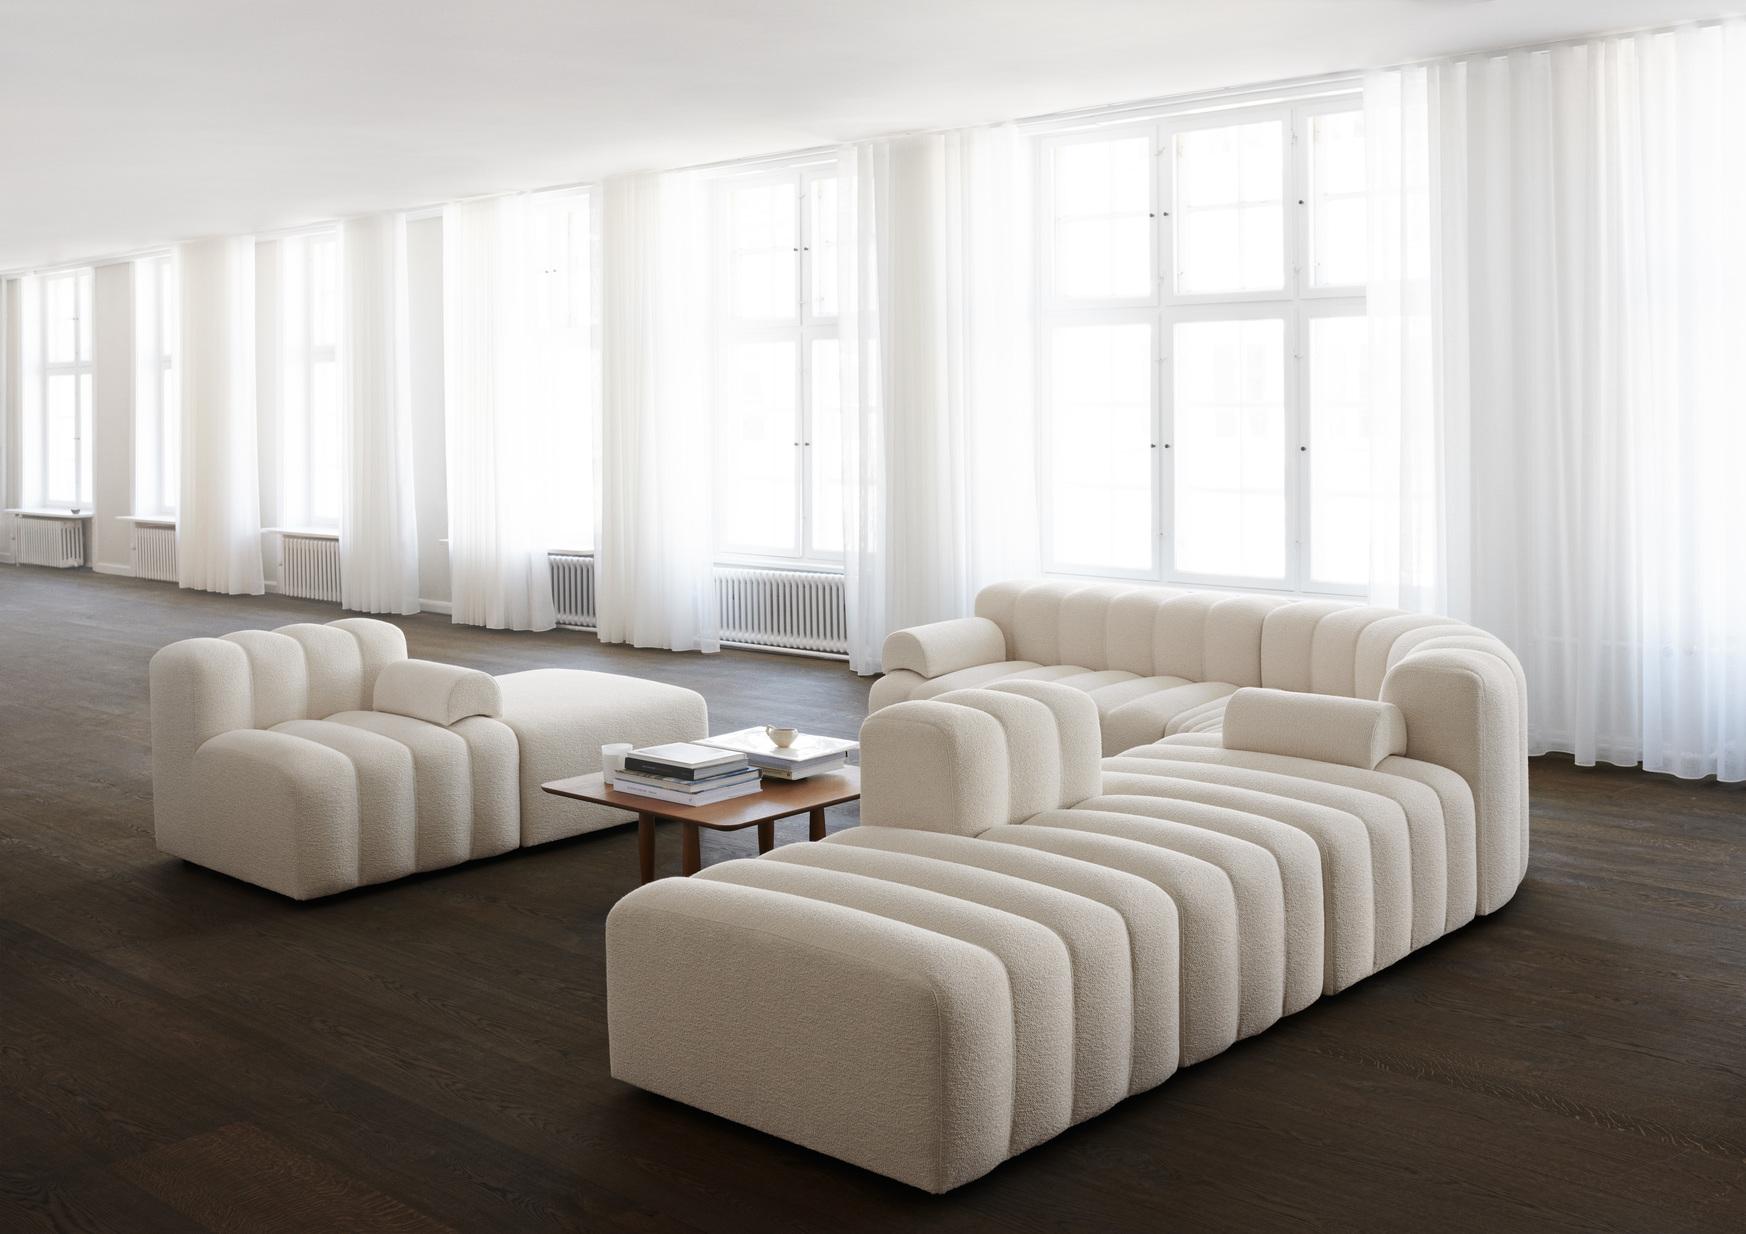 Danois Canapé « Studio » de Norr11, canapé modulaire, lot de 4, blanc en vente